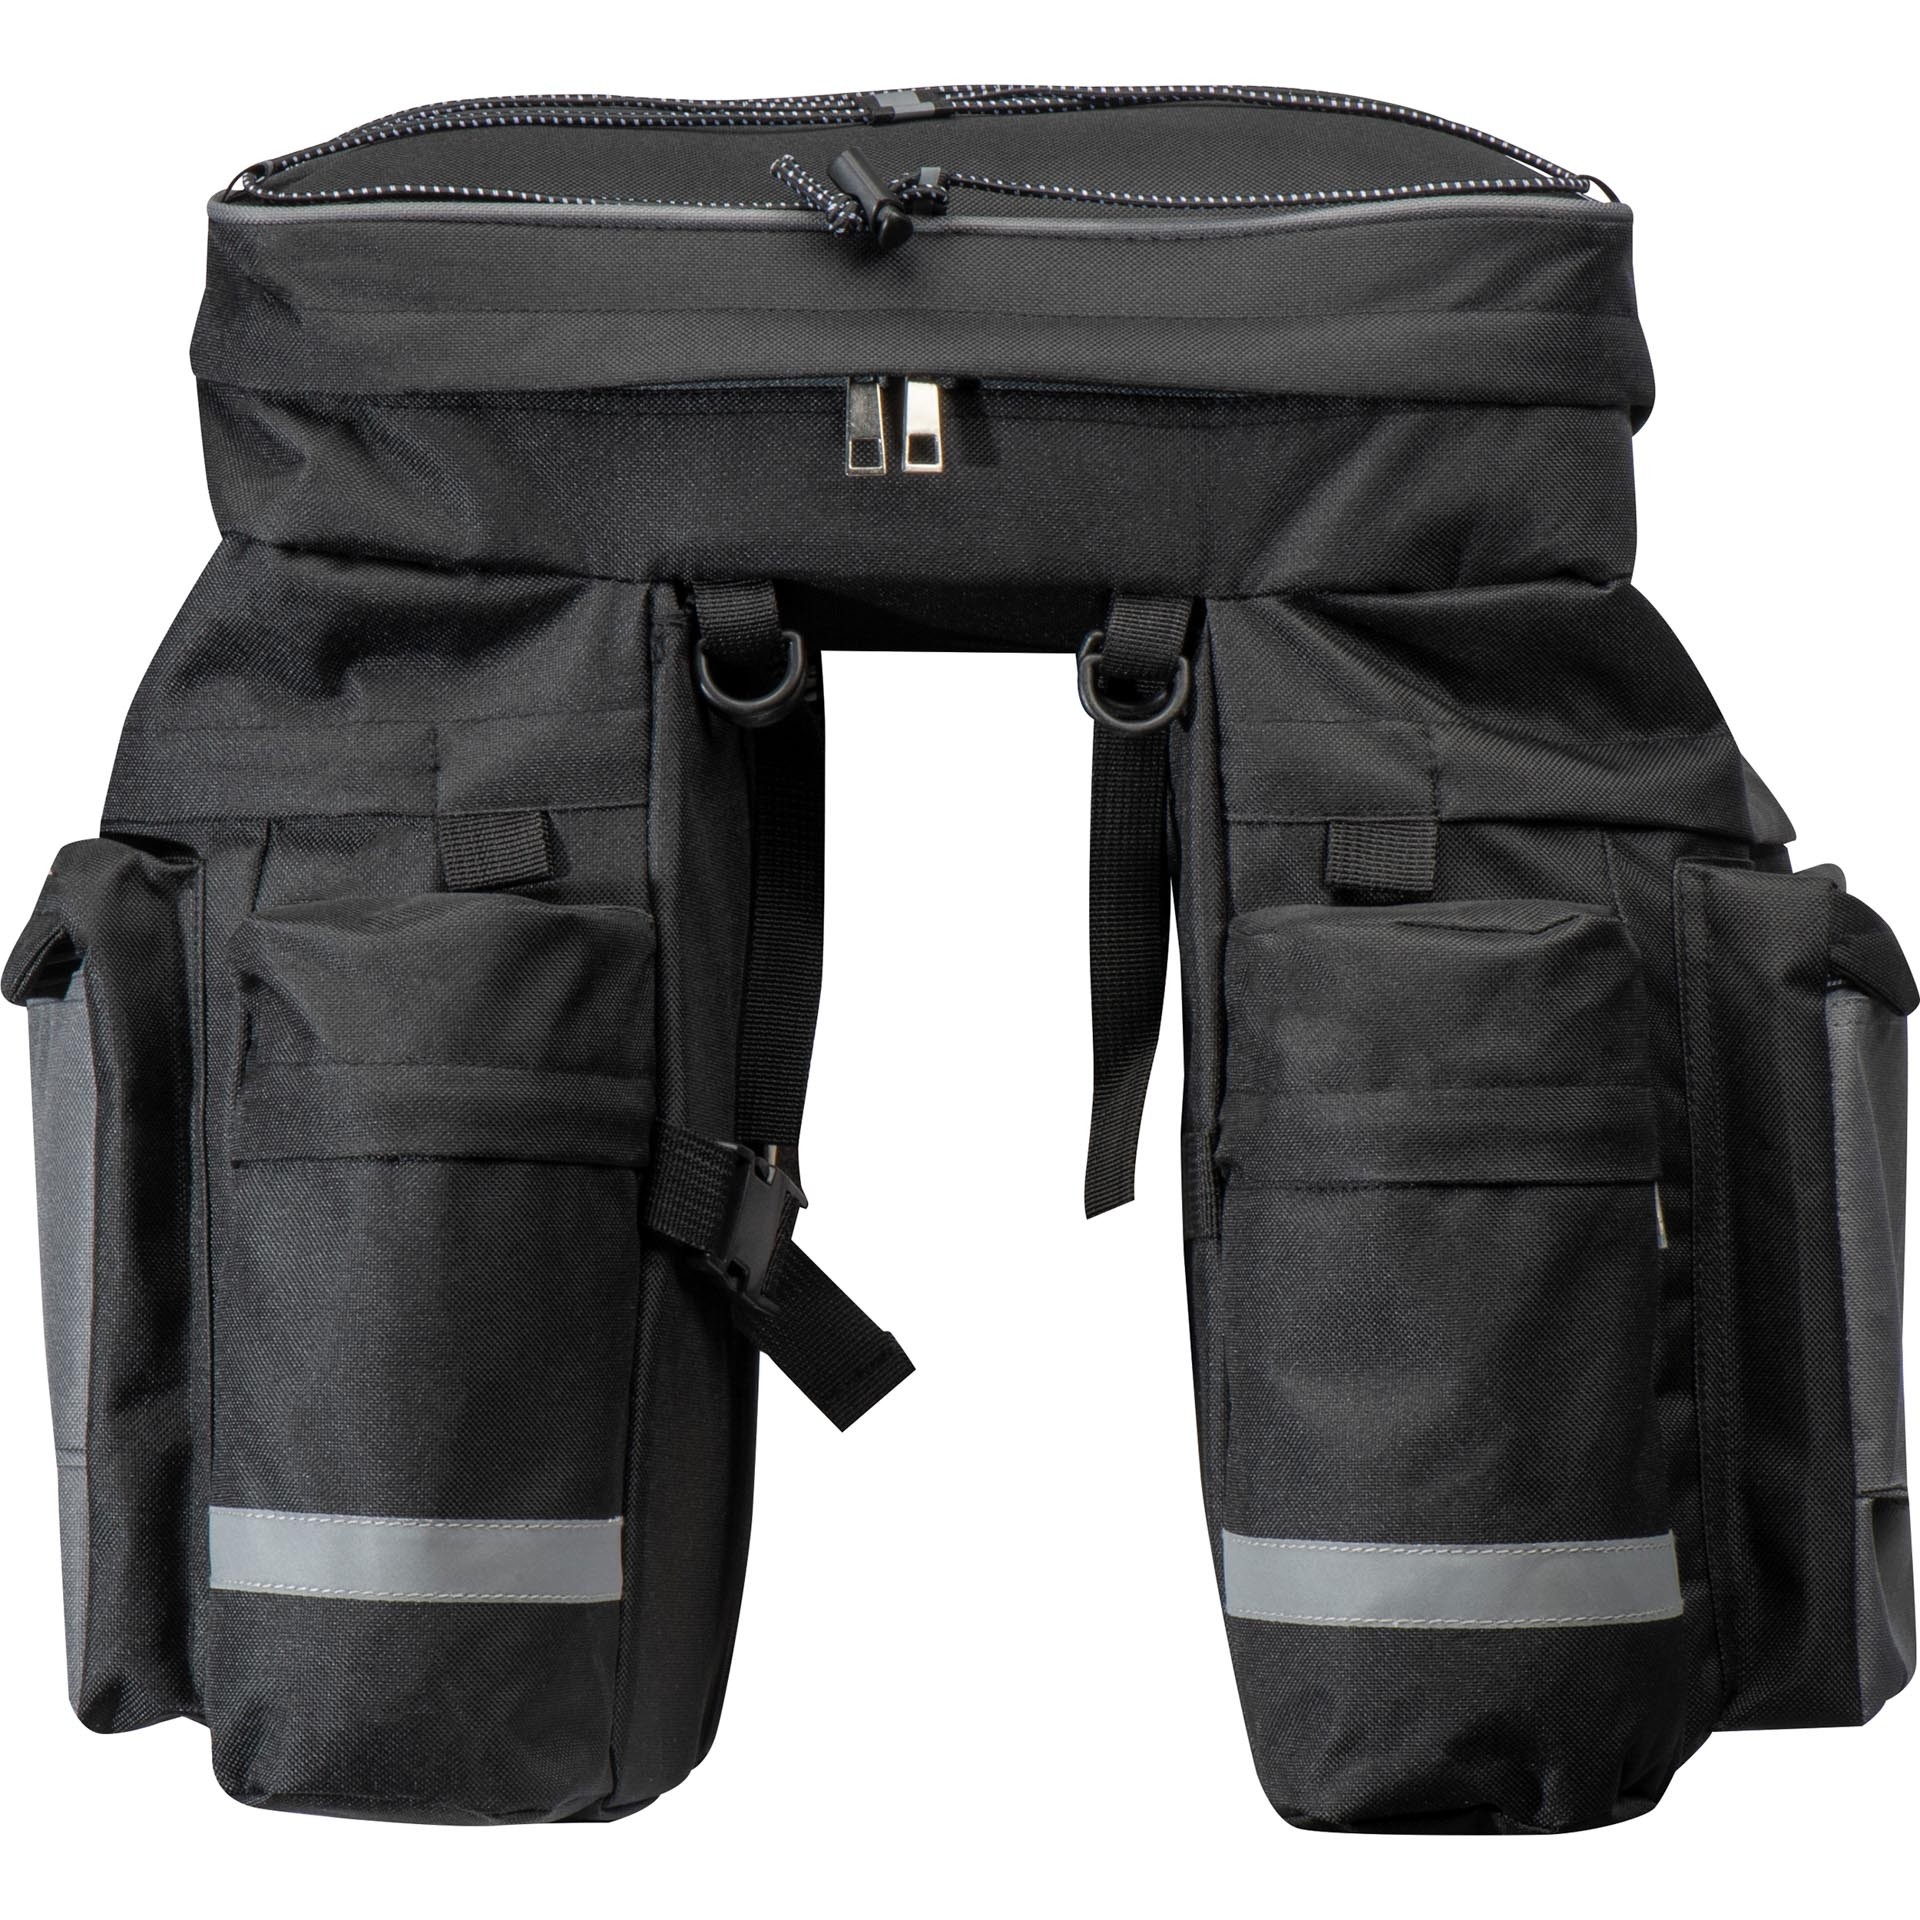 EUFAB Tasche Fahrradträger Premium TG Packtasche Aufbewahrungstasche Träger  schwarz Packsack Reise